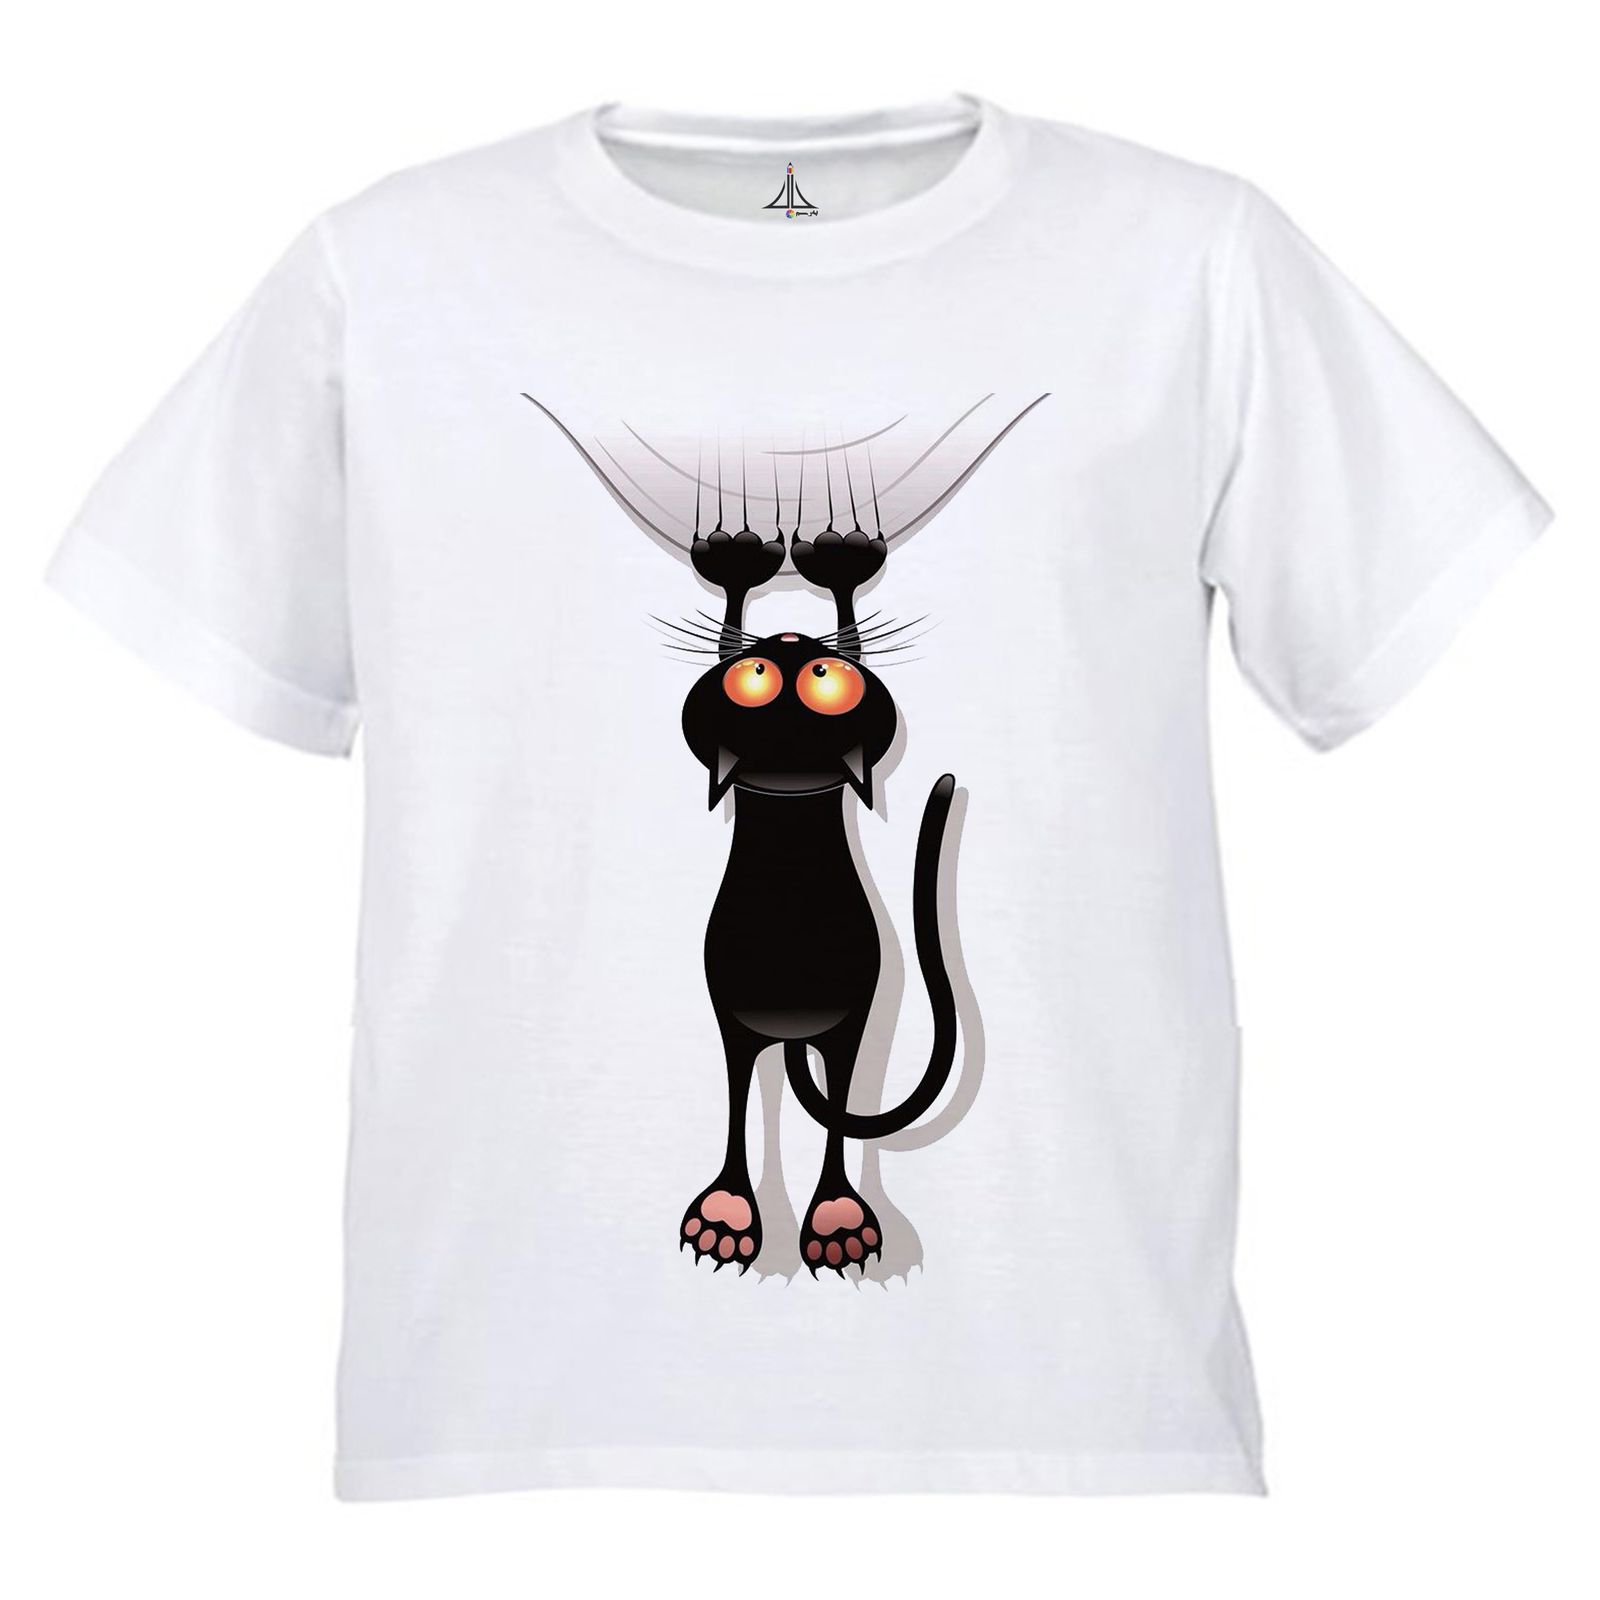 تی شرت دخترانه به رسم طرح گربه کد 9902 -  - 1